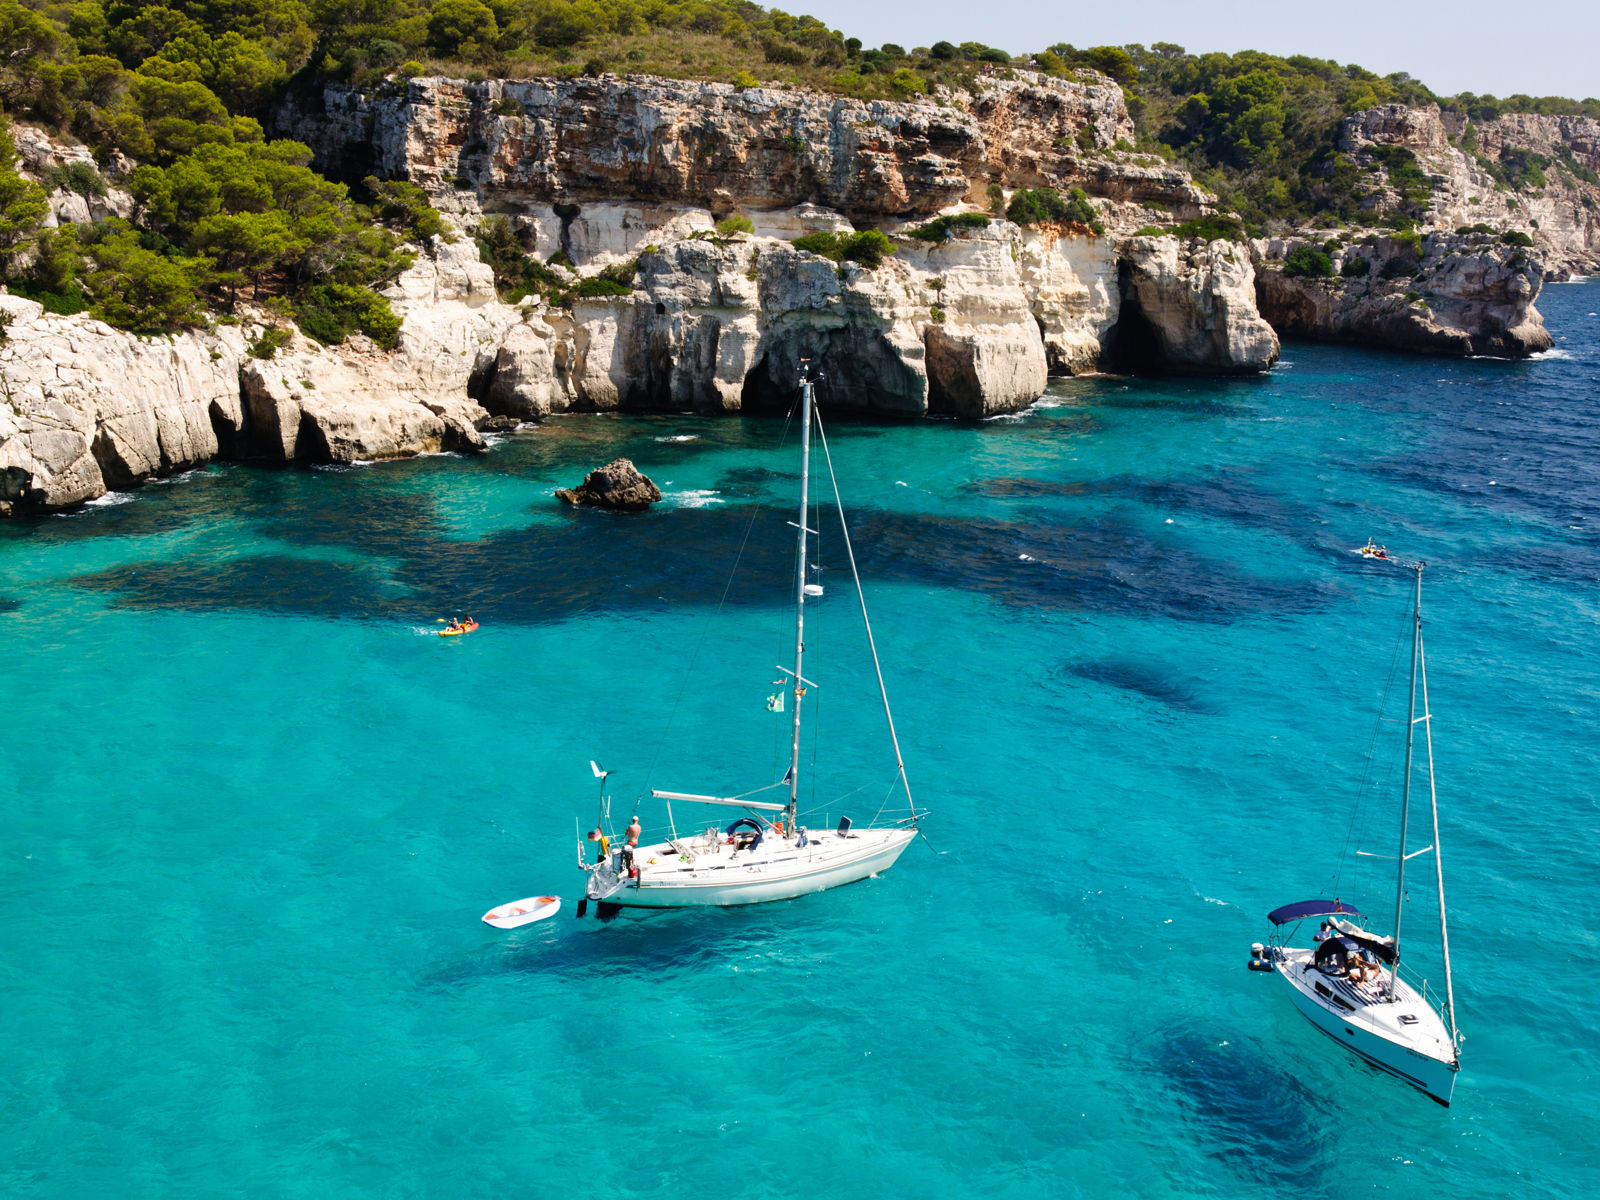 Resa till Menorica - Segelbåtar på turkosblått vatten vid klippiga kusten med frodig grönska.